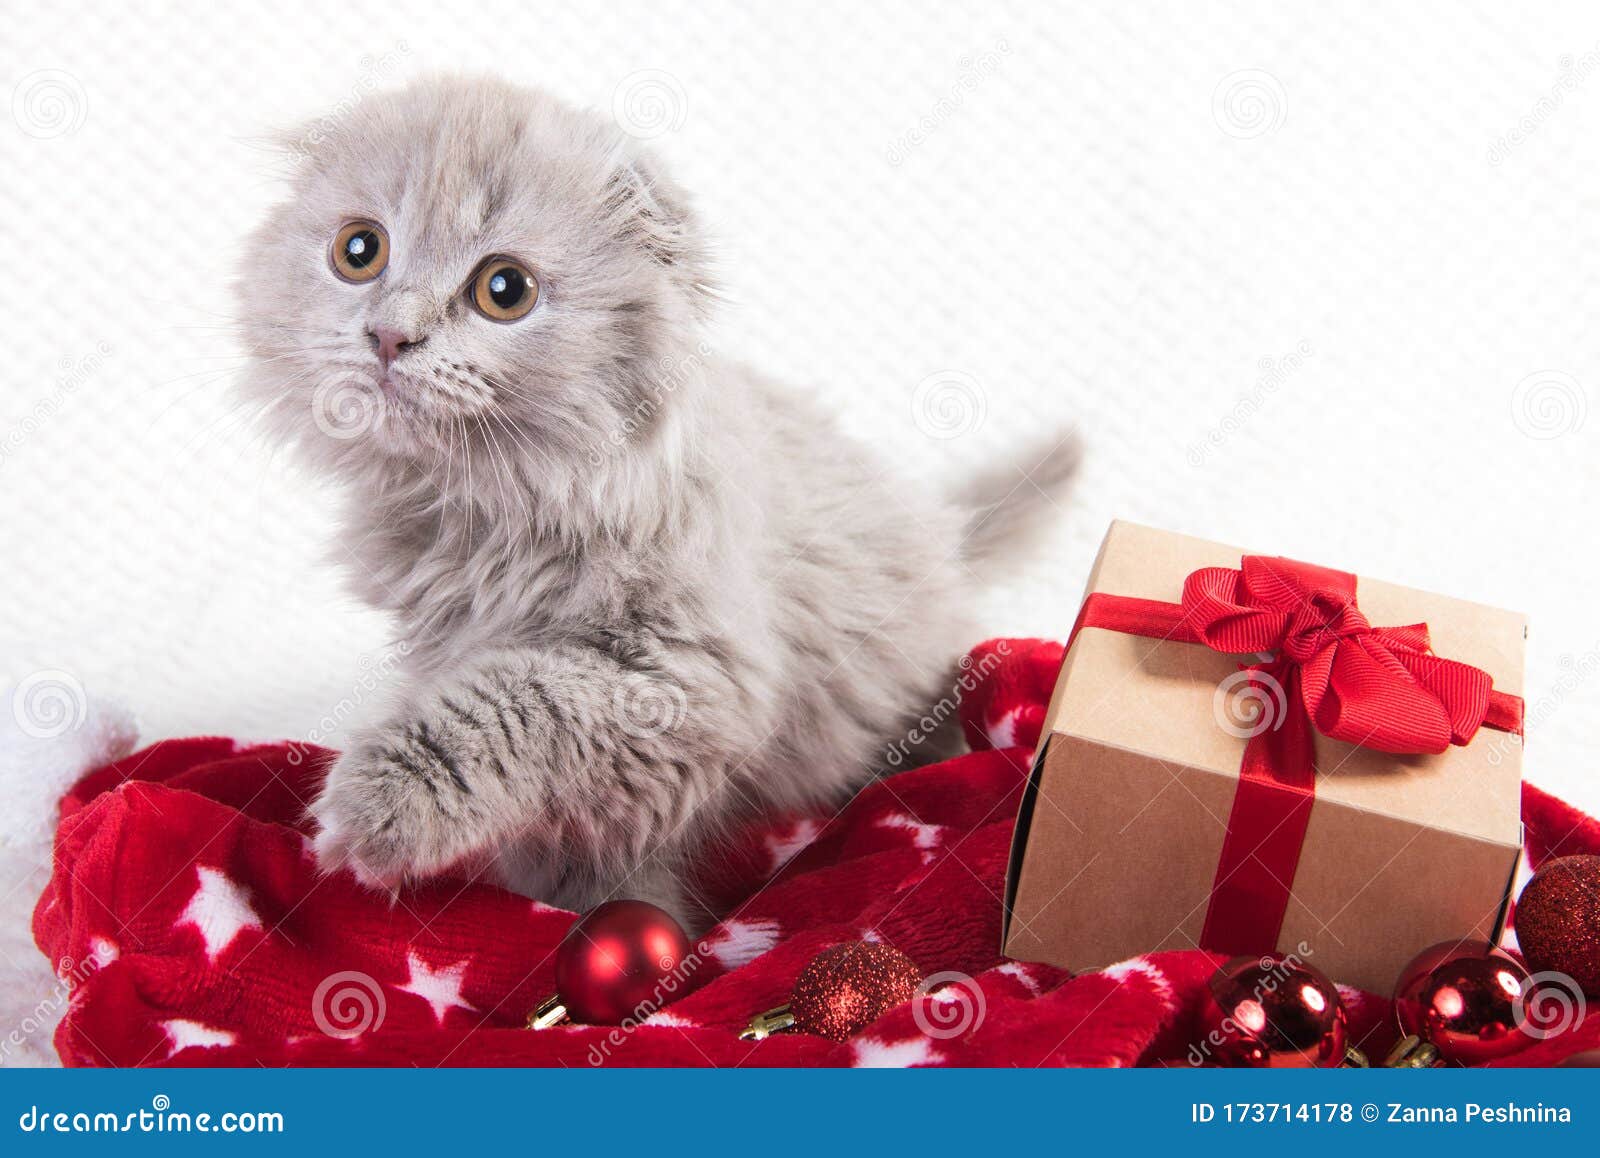 Scottish Fold Highland Fold Cat and Gift Box Stock Photo - Image of ...